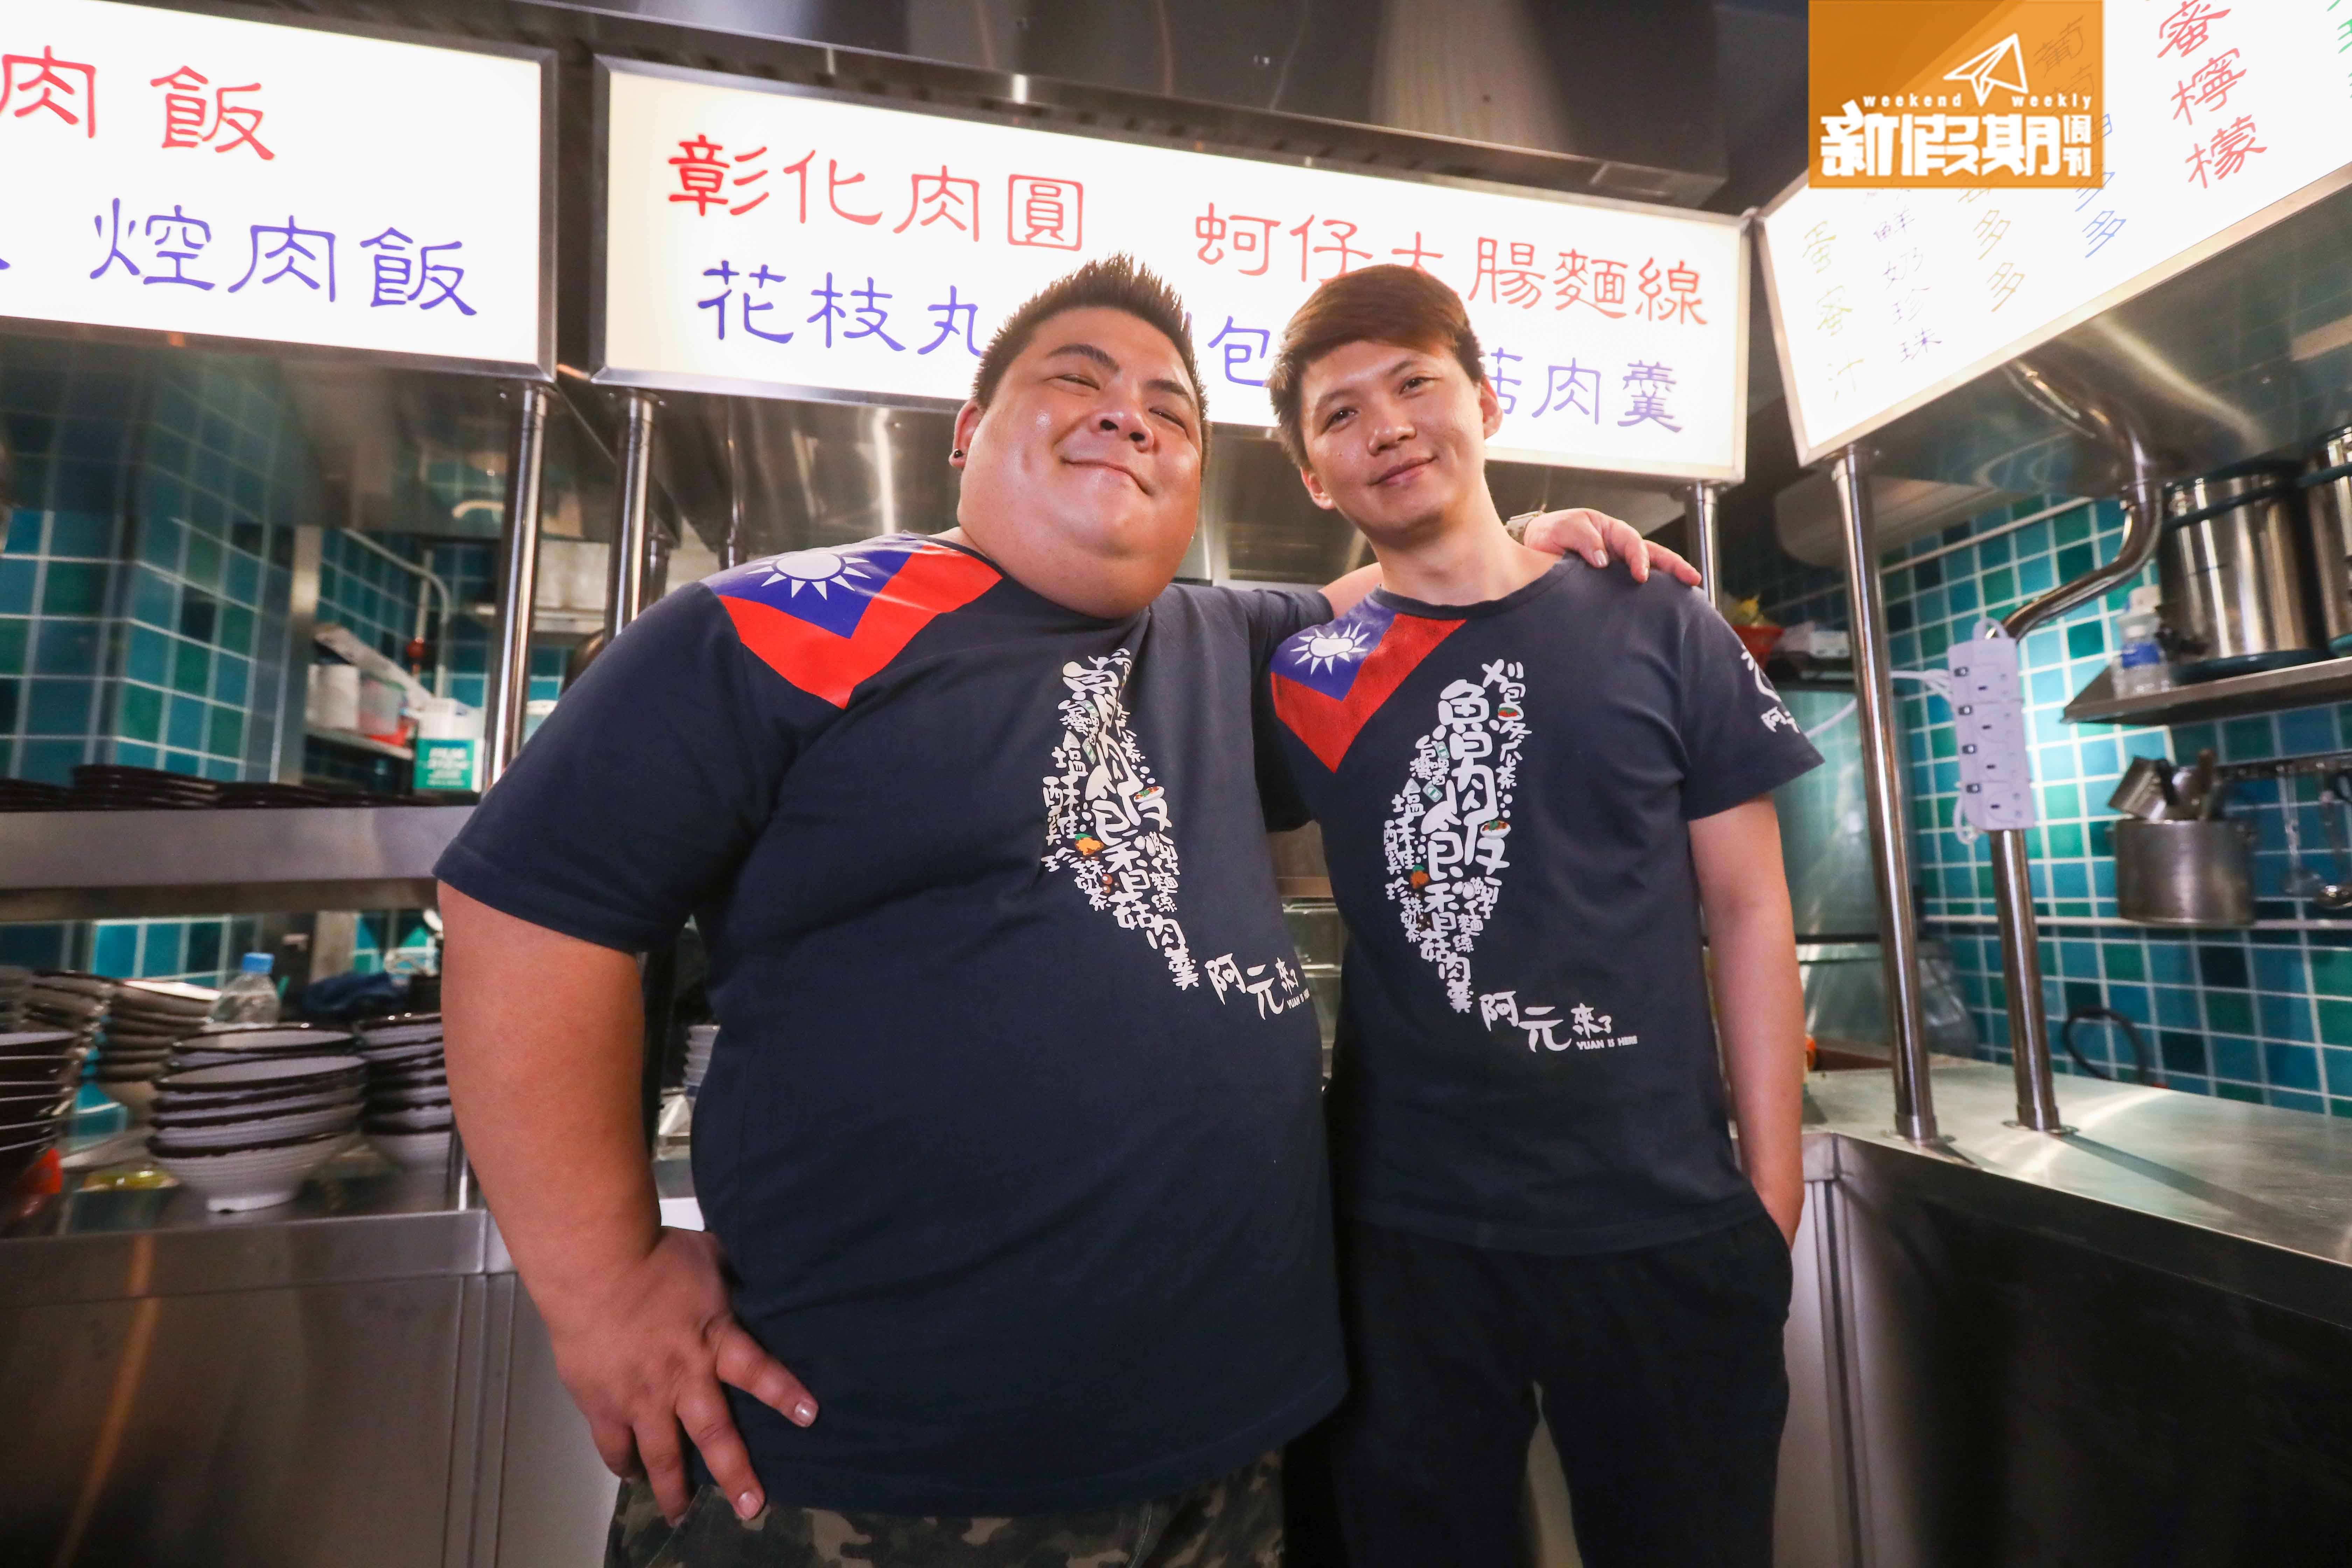 阿元來了 阿元（左）和阿耀（右）都來自台灣。阿元已經在港五年，而新加入的廚師阿耀則來自台東，因為有位香港太太，於是在香港居住。